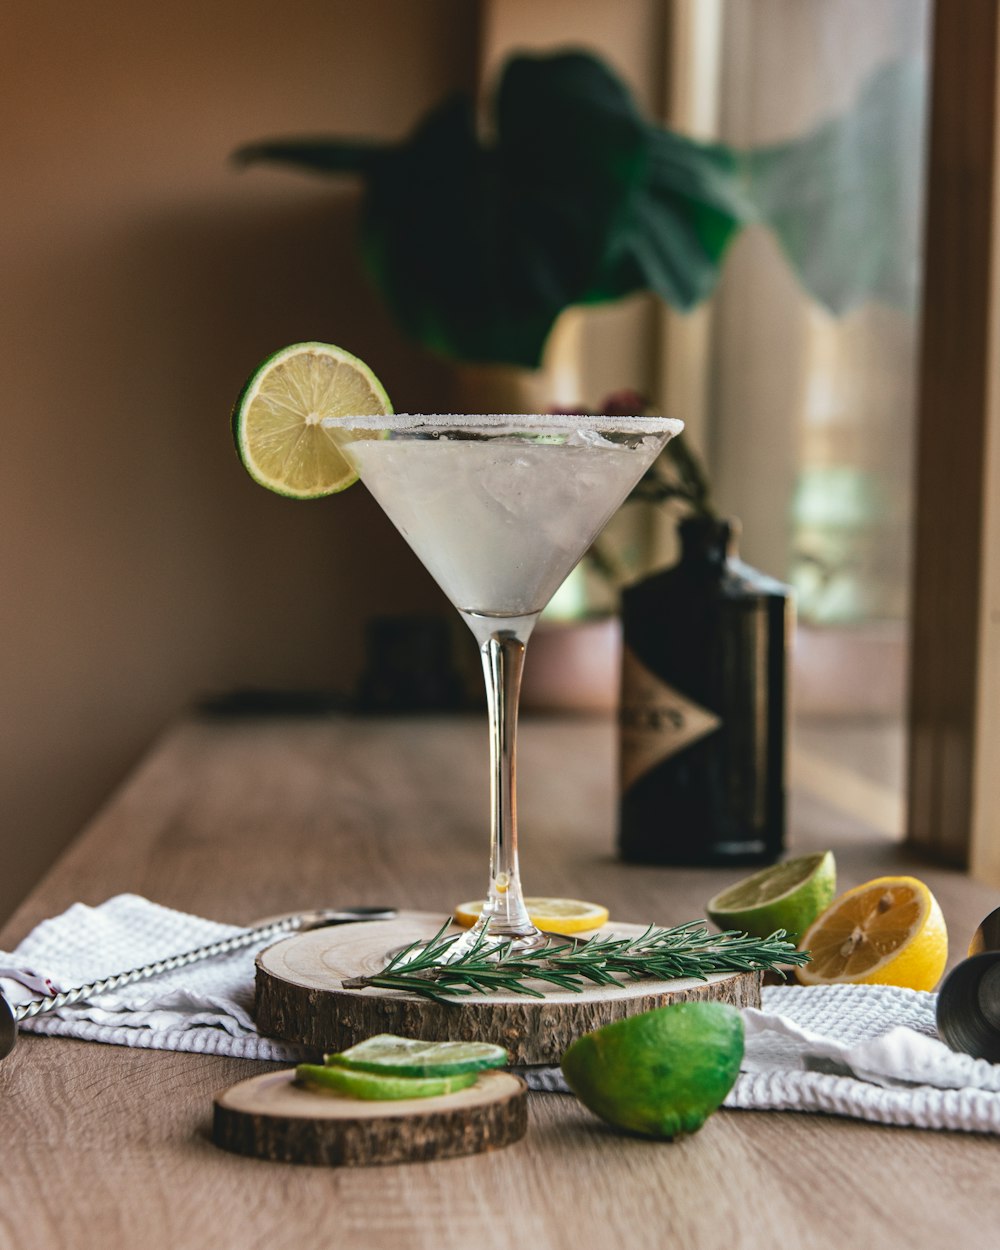 vidro de martini claro com limão fatiado na mesa de madeira marrom